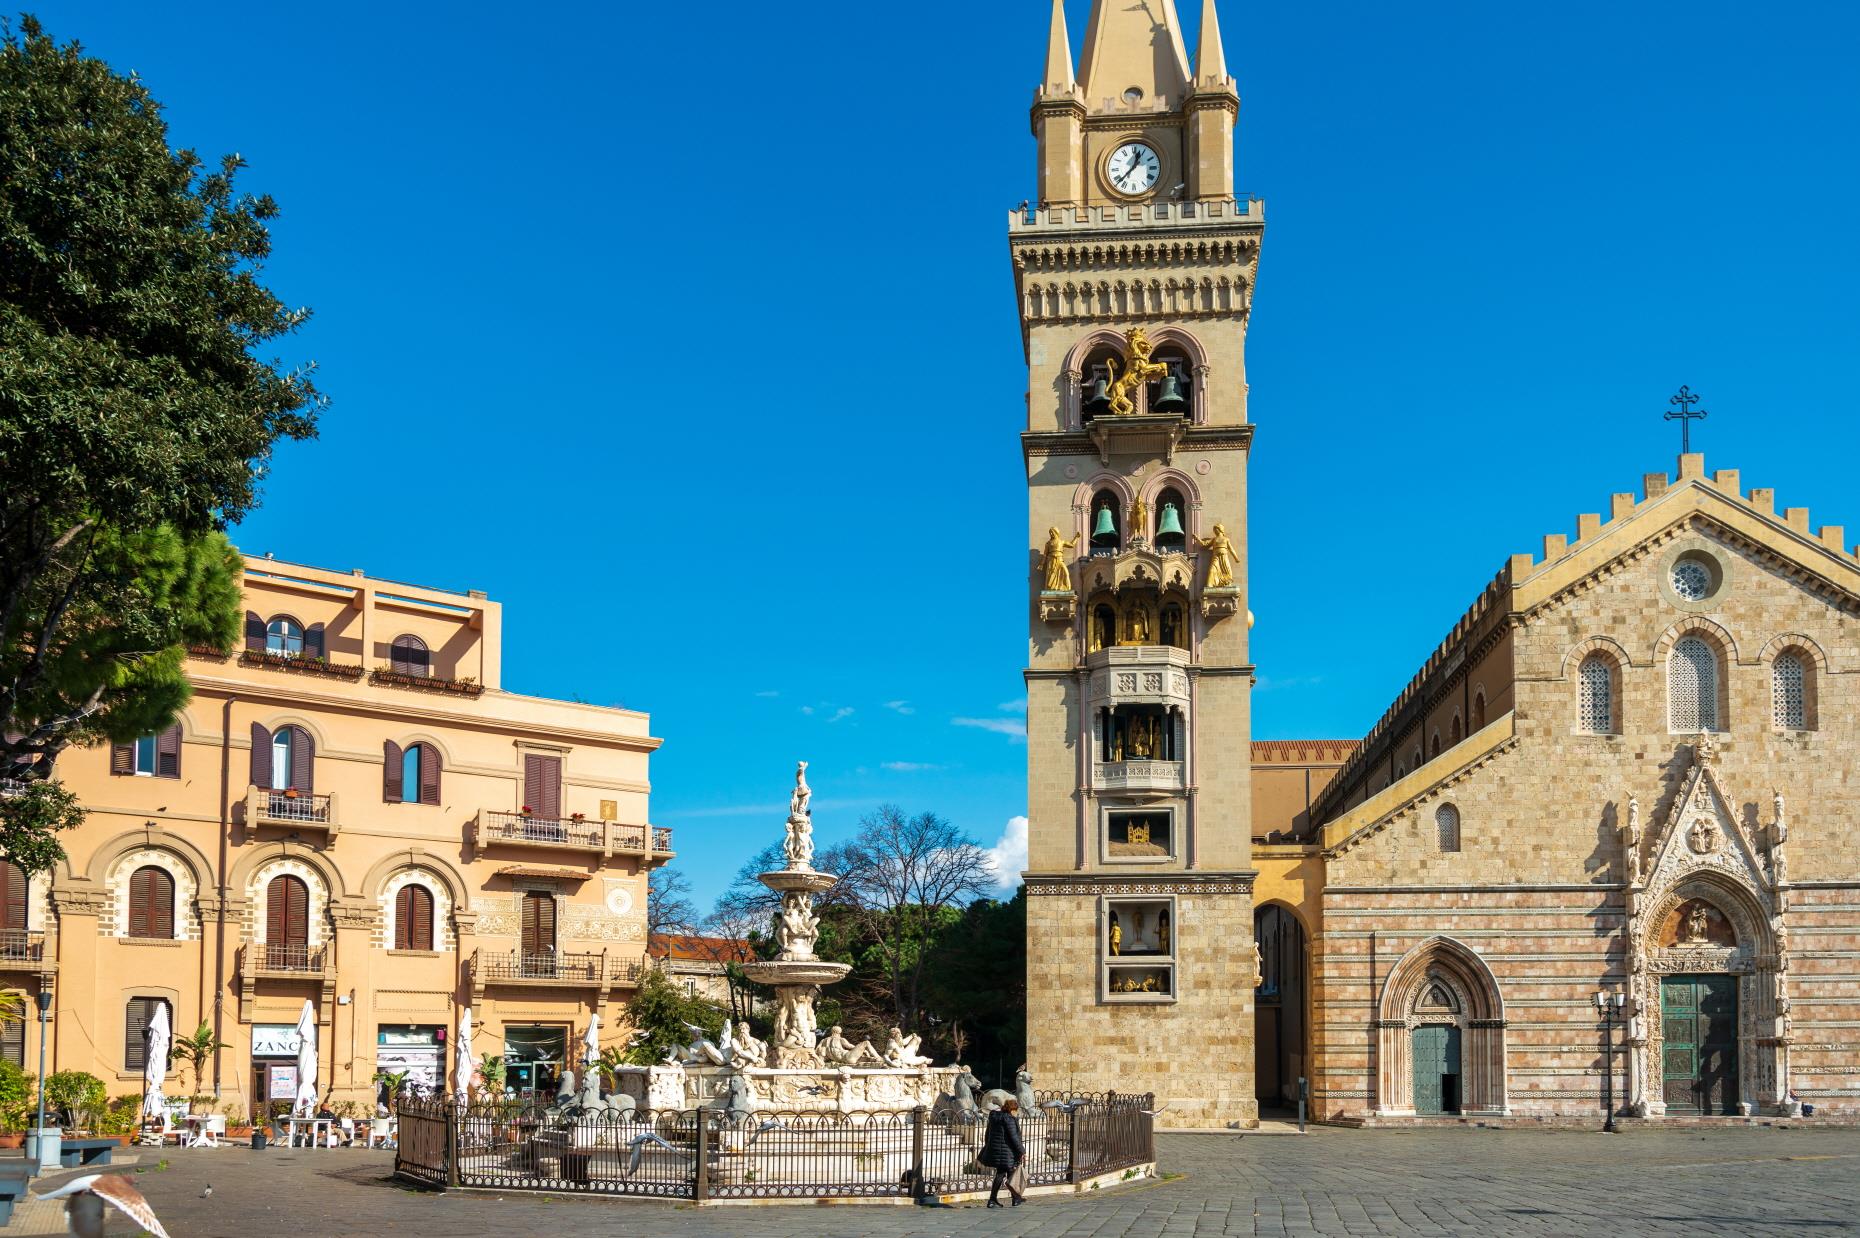 메시나 대성당과 두오모 광장  Cathedral of Messina and Piazza del Duomo